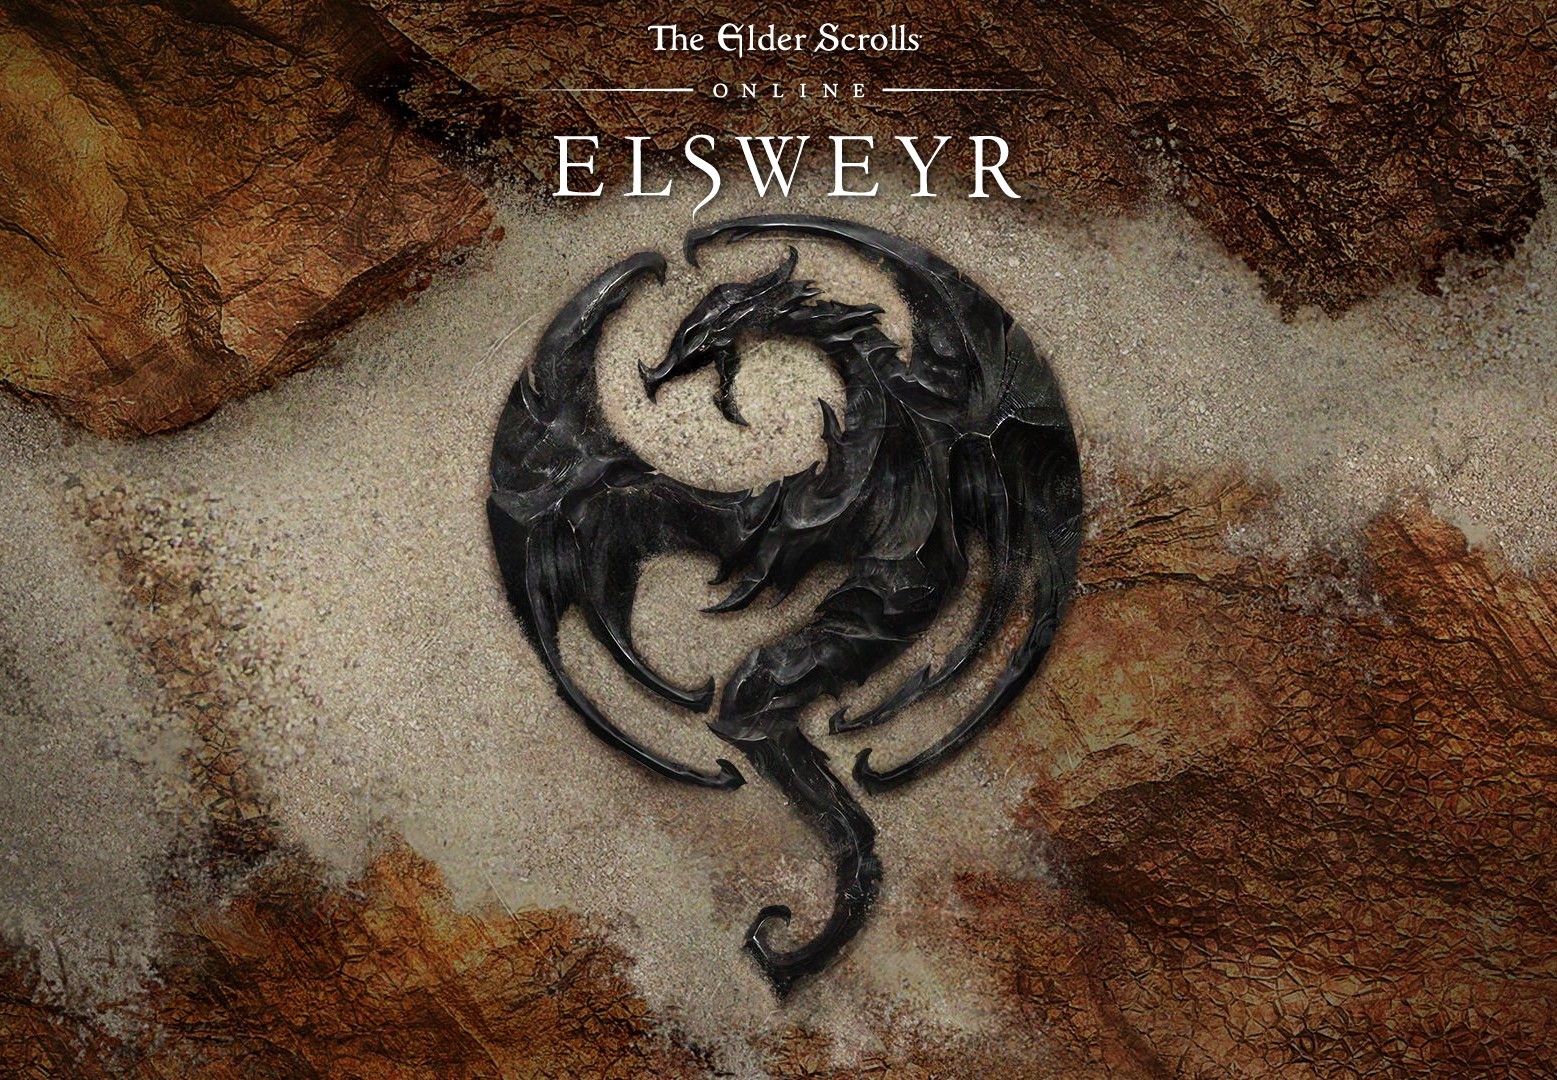 The Elder Scrolls Online: Elsweyr Standard Digital Download CD Key